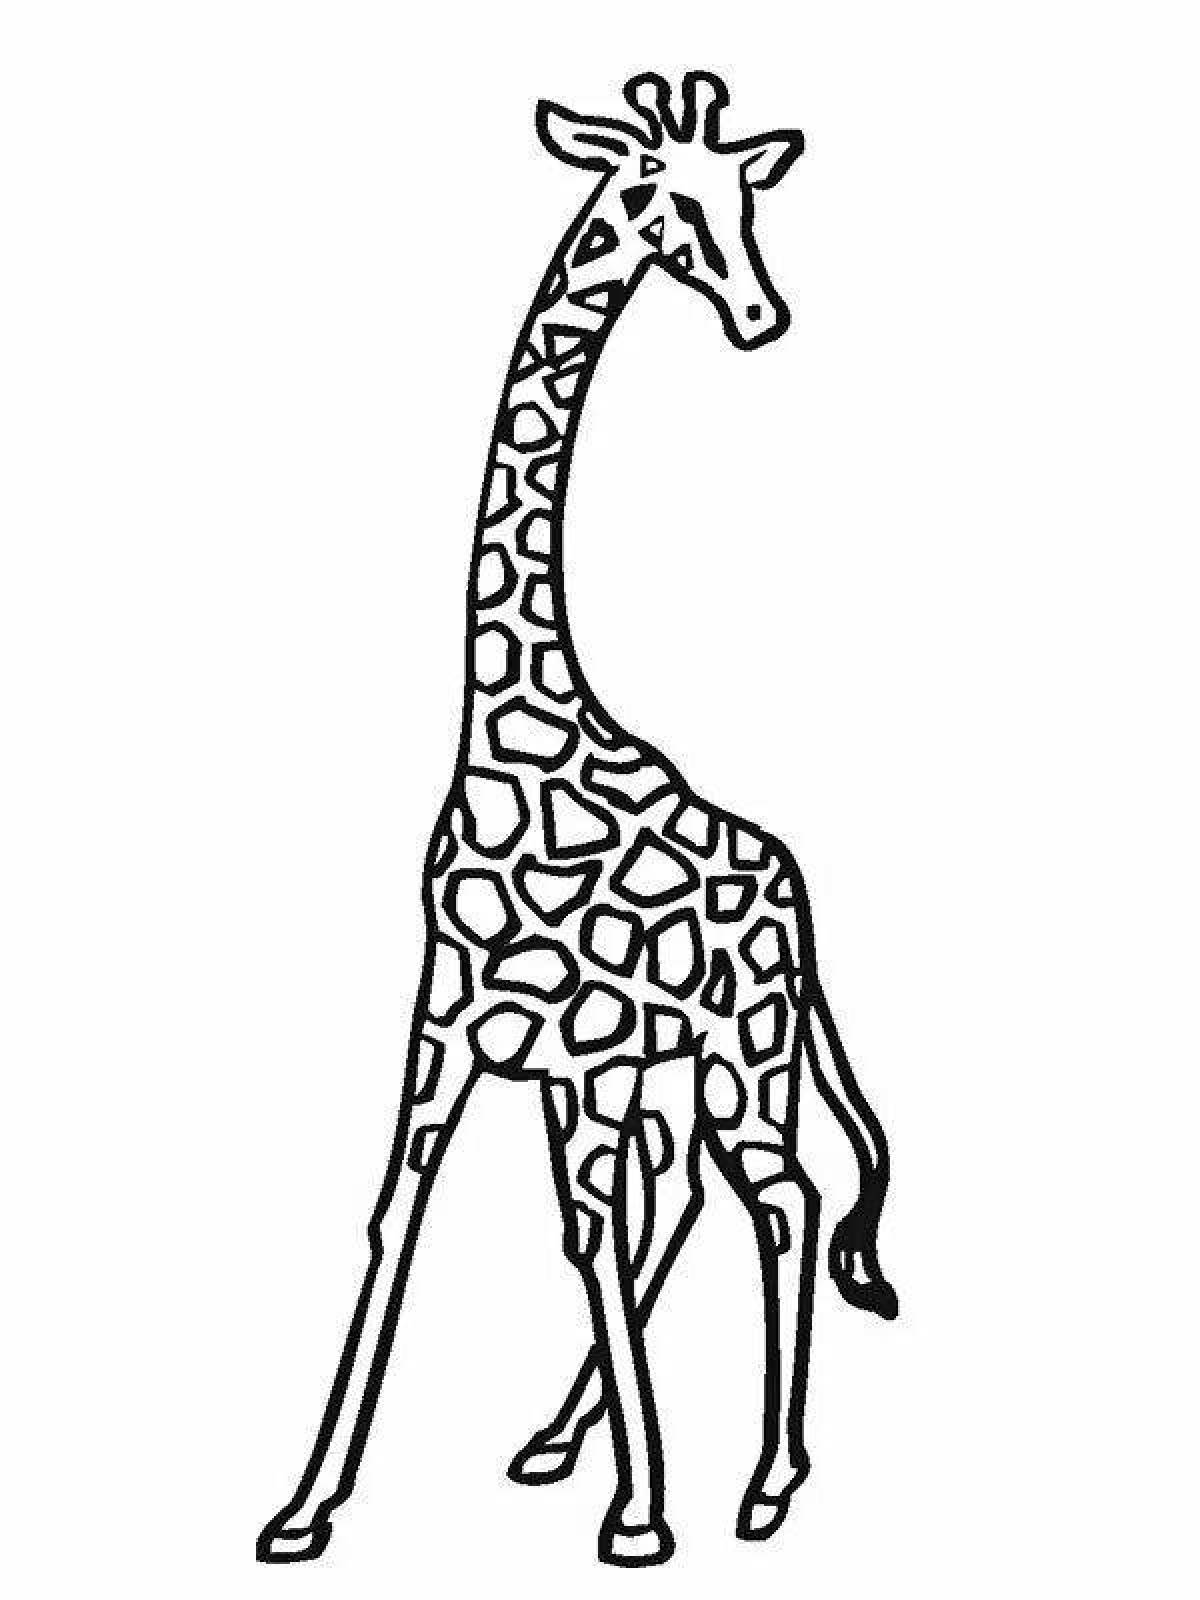 Жираф раскраска для детей 4-5 лет